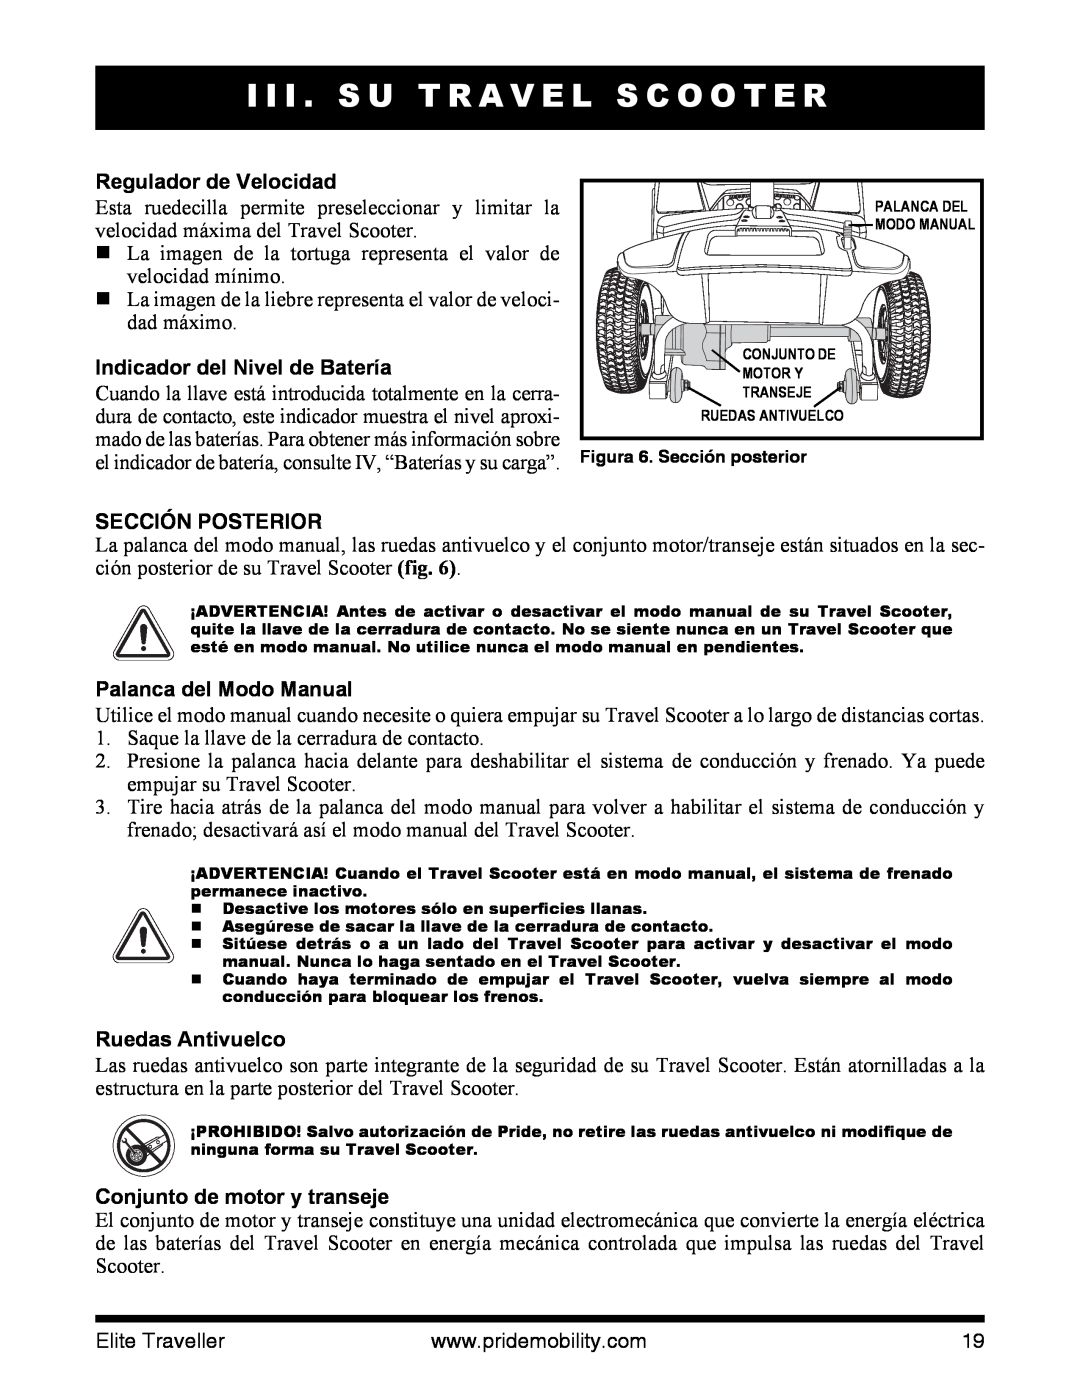 Pride Mobility SC40E Regulador de Velocidad, Indicador del Nivel de Batería, Sección Posterior, Palanca del Modo Manual 